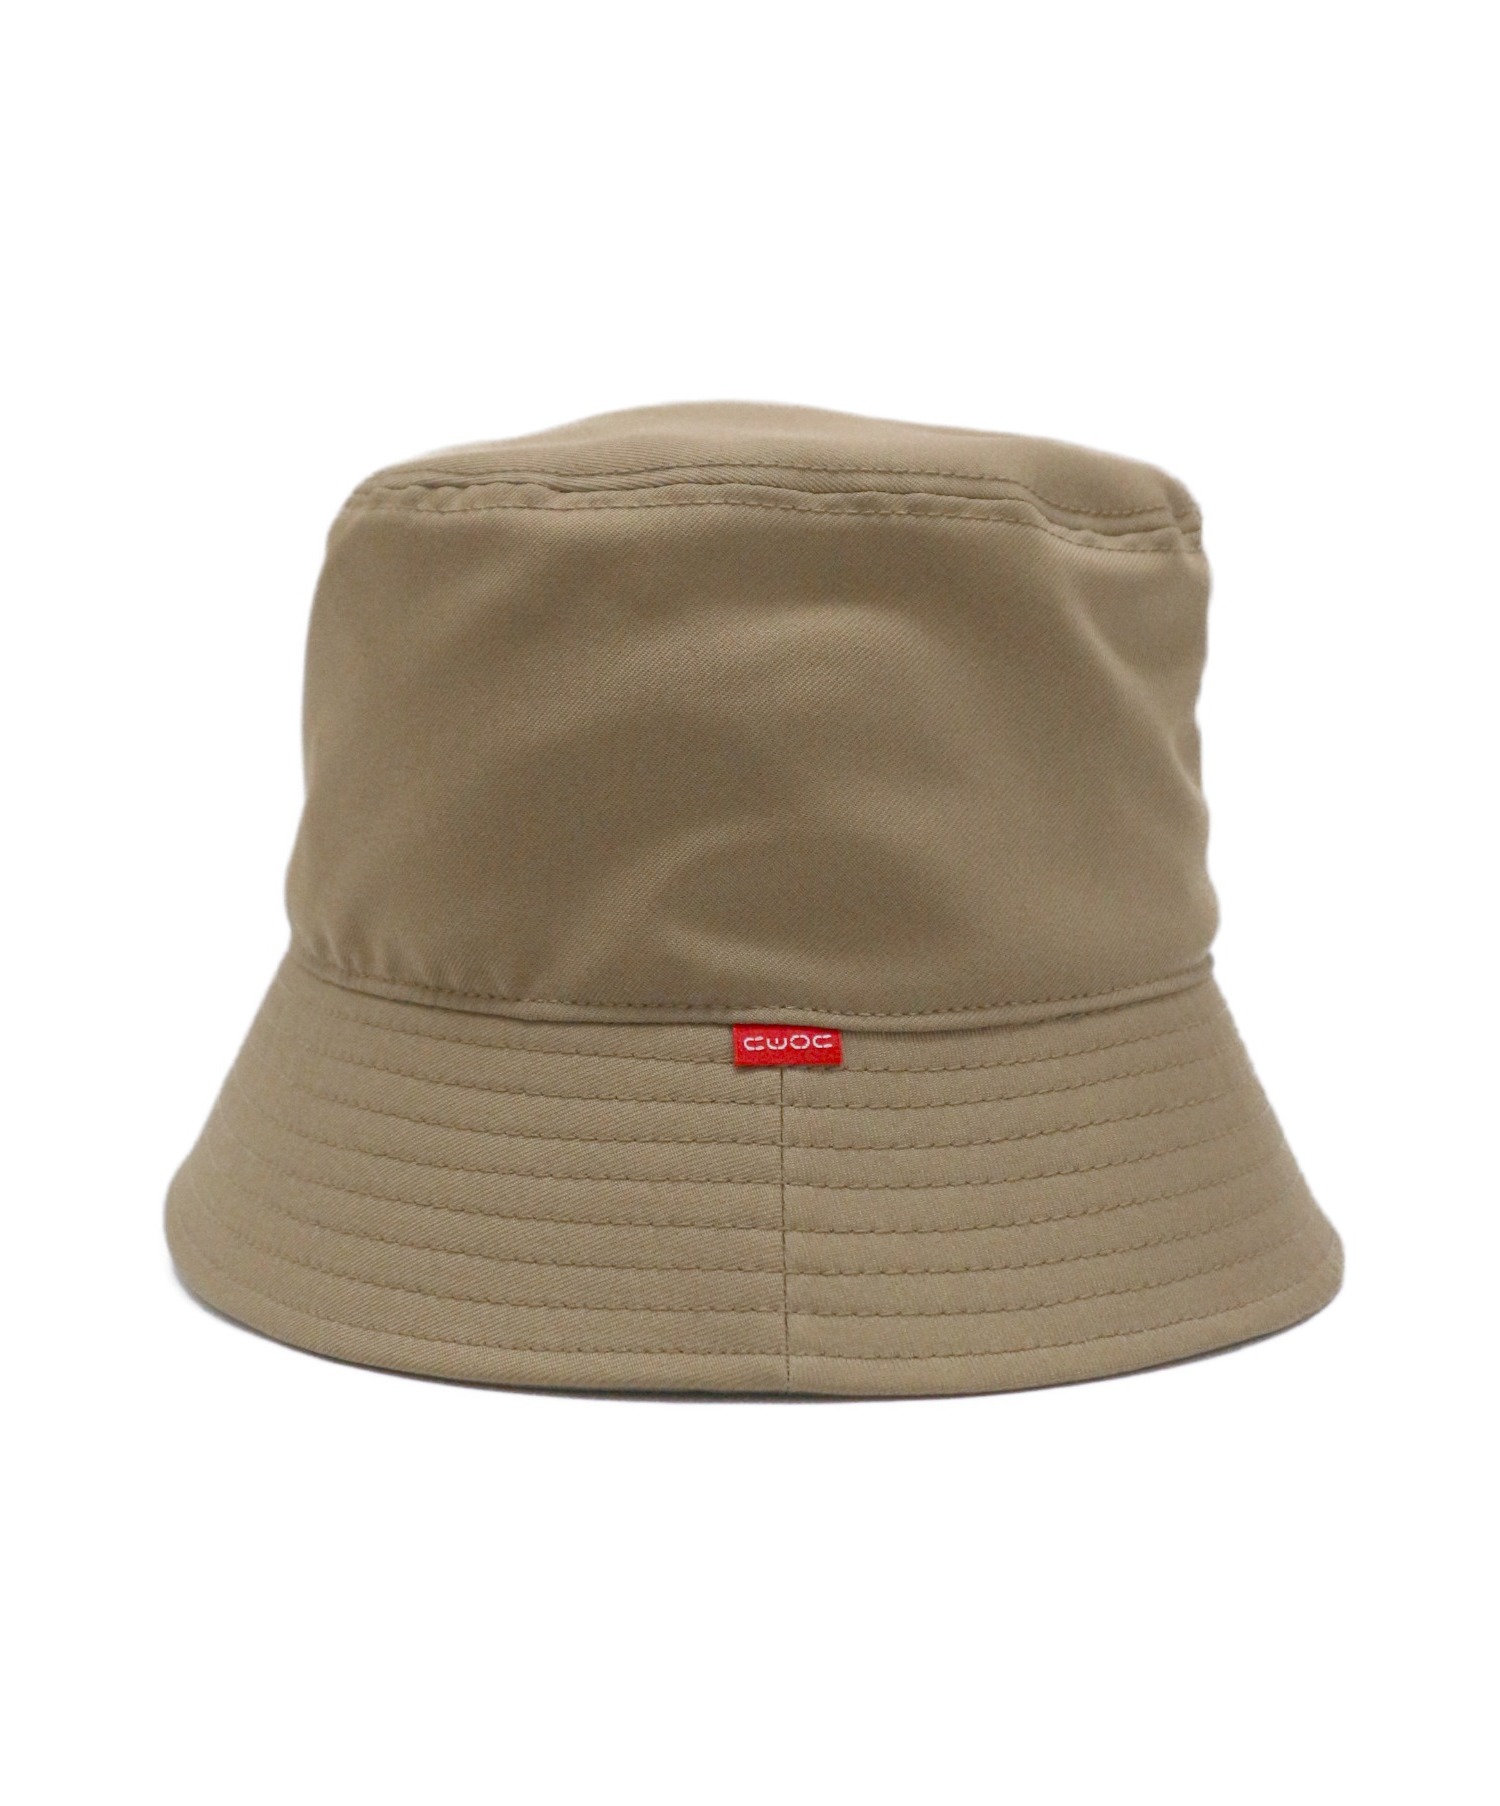 NEON SIGN (ネオンサイン) Bucket hat ブラウン サイズ:F 1212 バケットハット